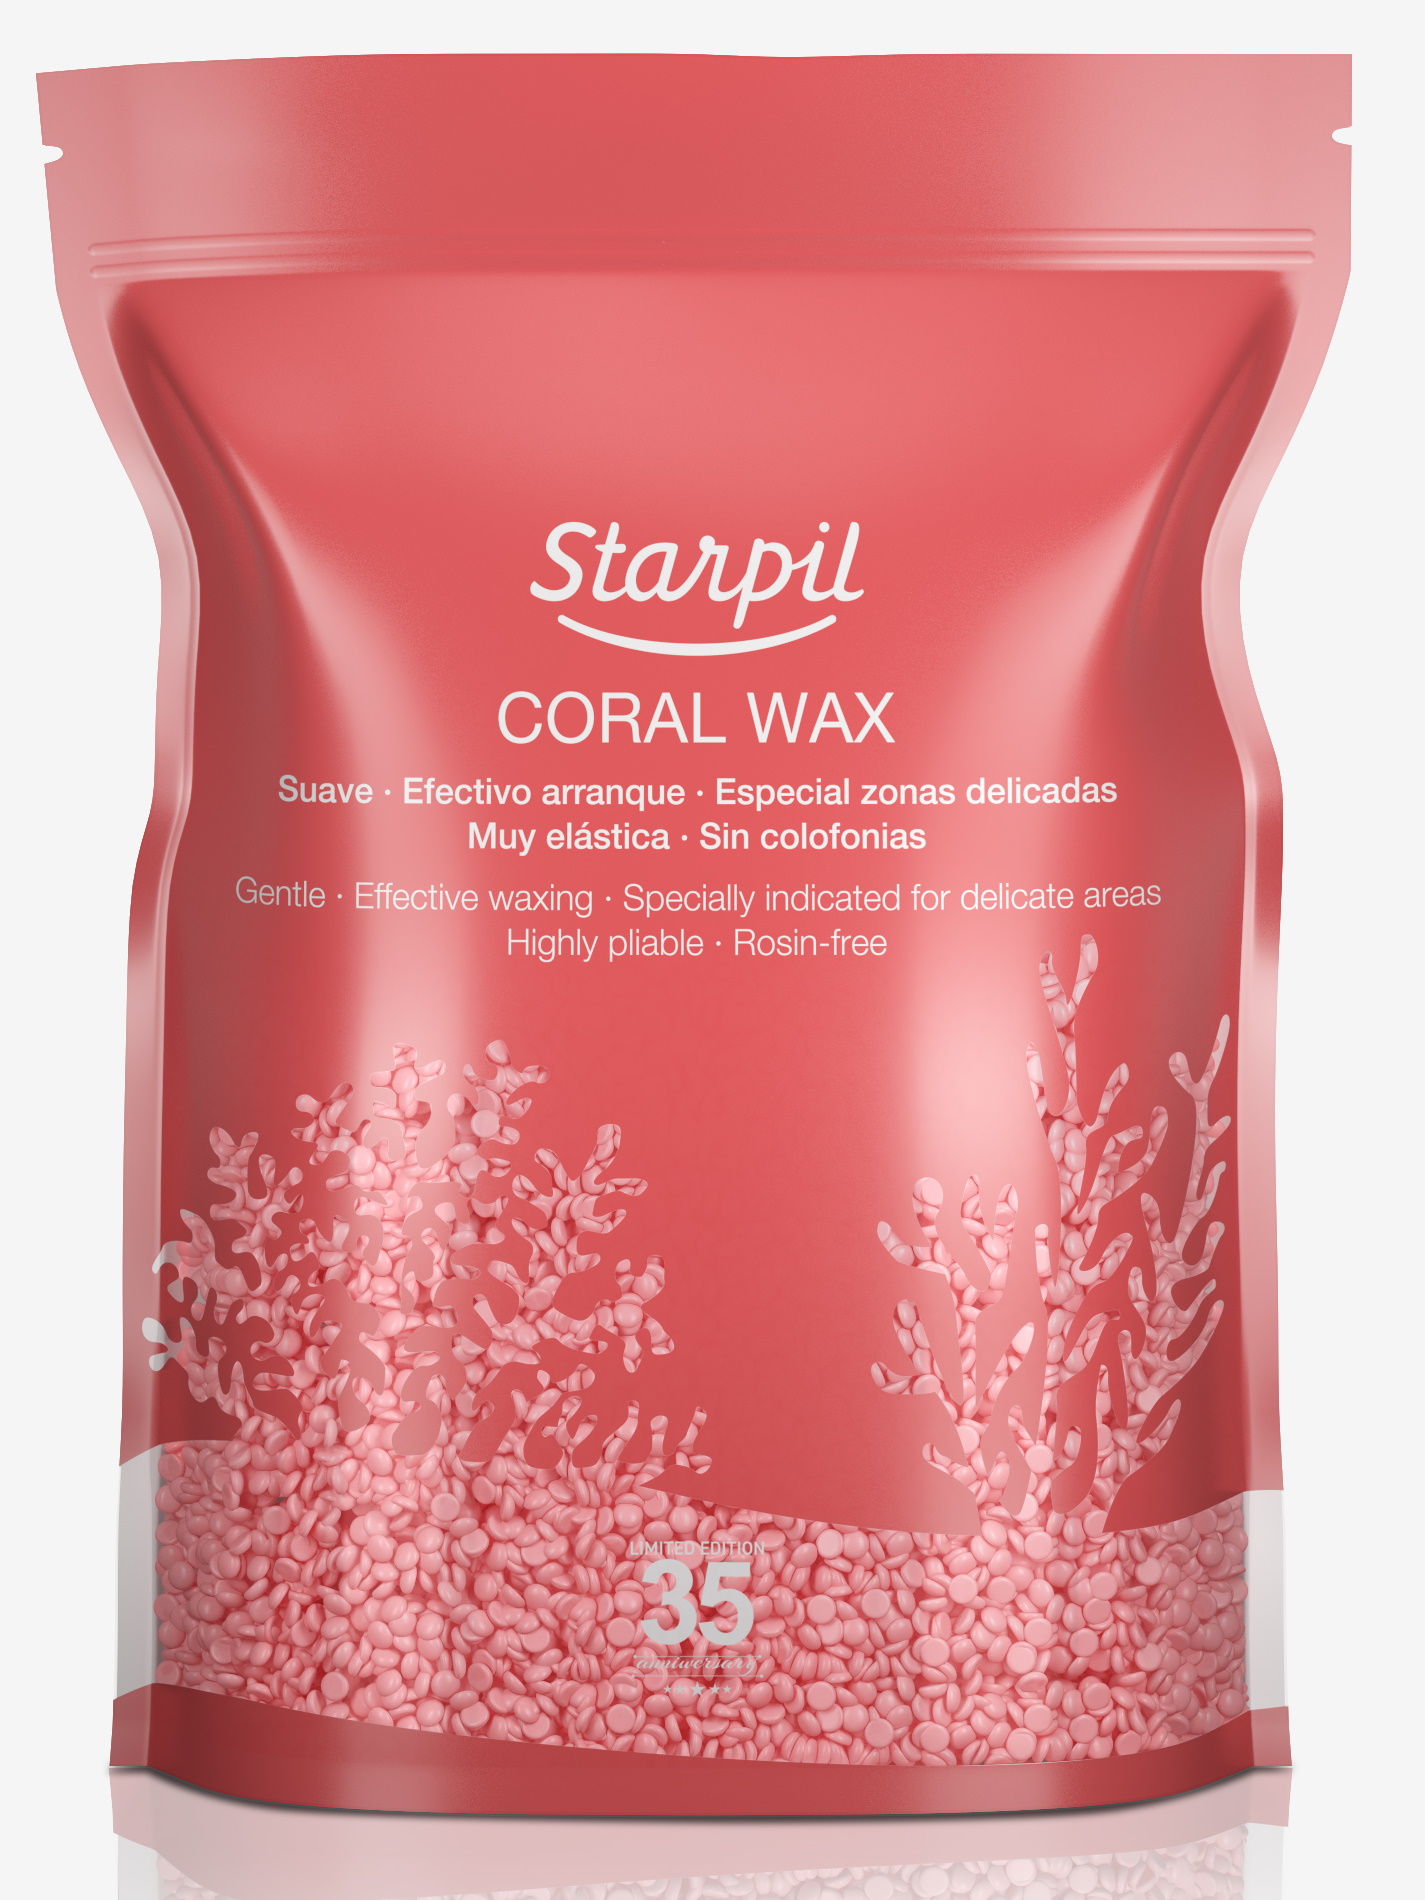 Воск для депиляции STARPIL коралл/coral wax 1000 г воск для депиляции starpil коралл coral wax 1000 г